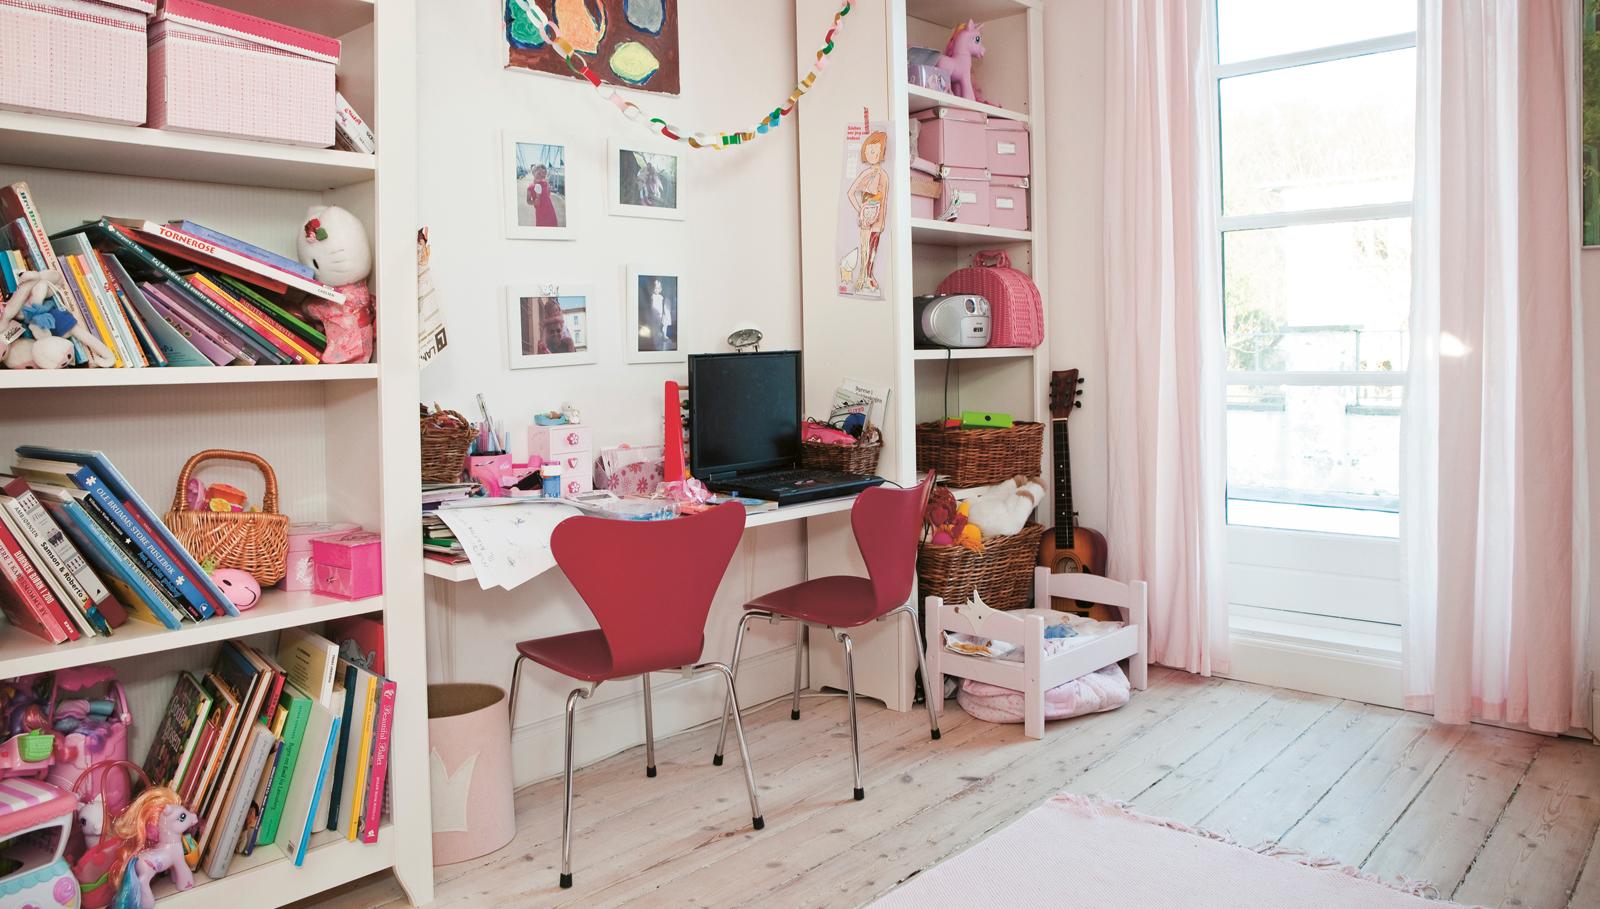 Pinkfarbene Stühle von Arne Jacobsen im rosafarbenen Kinderzimmer #mädchenzimmer ©Fritz Hansen